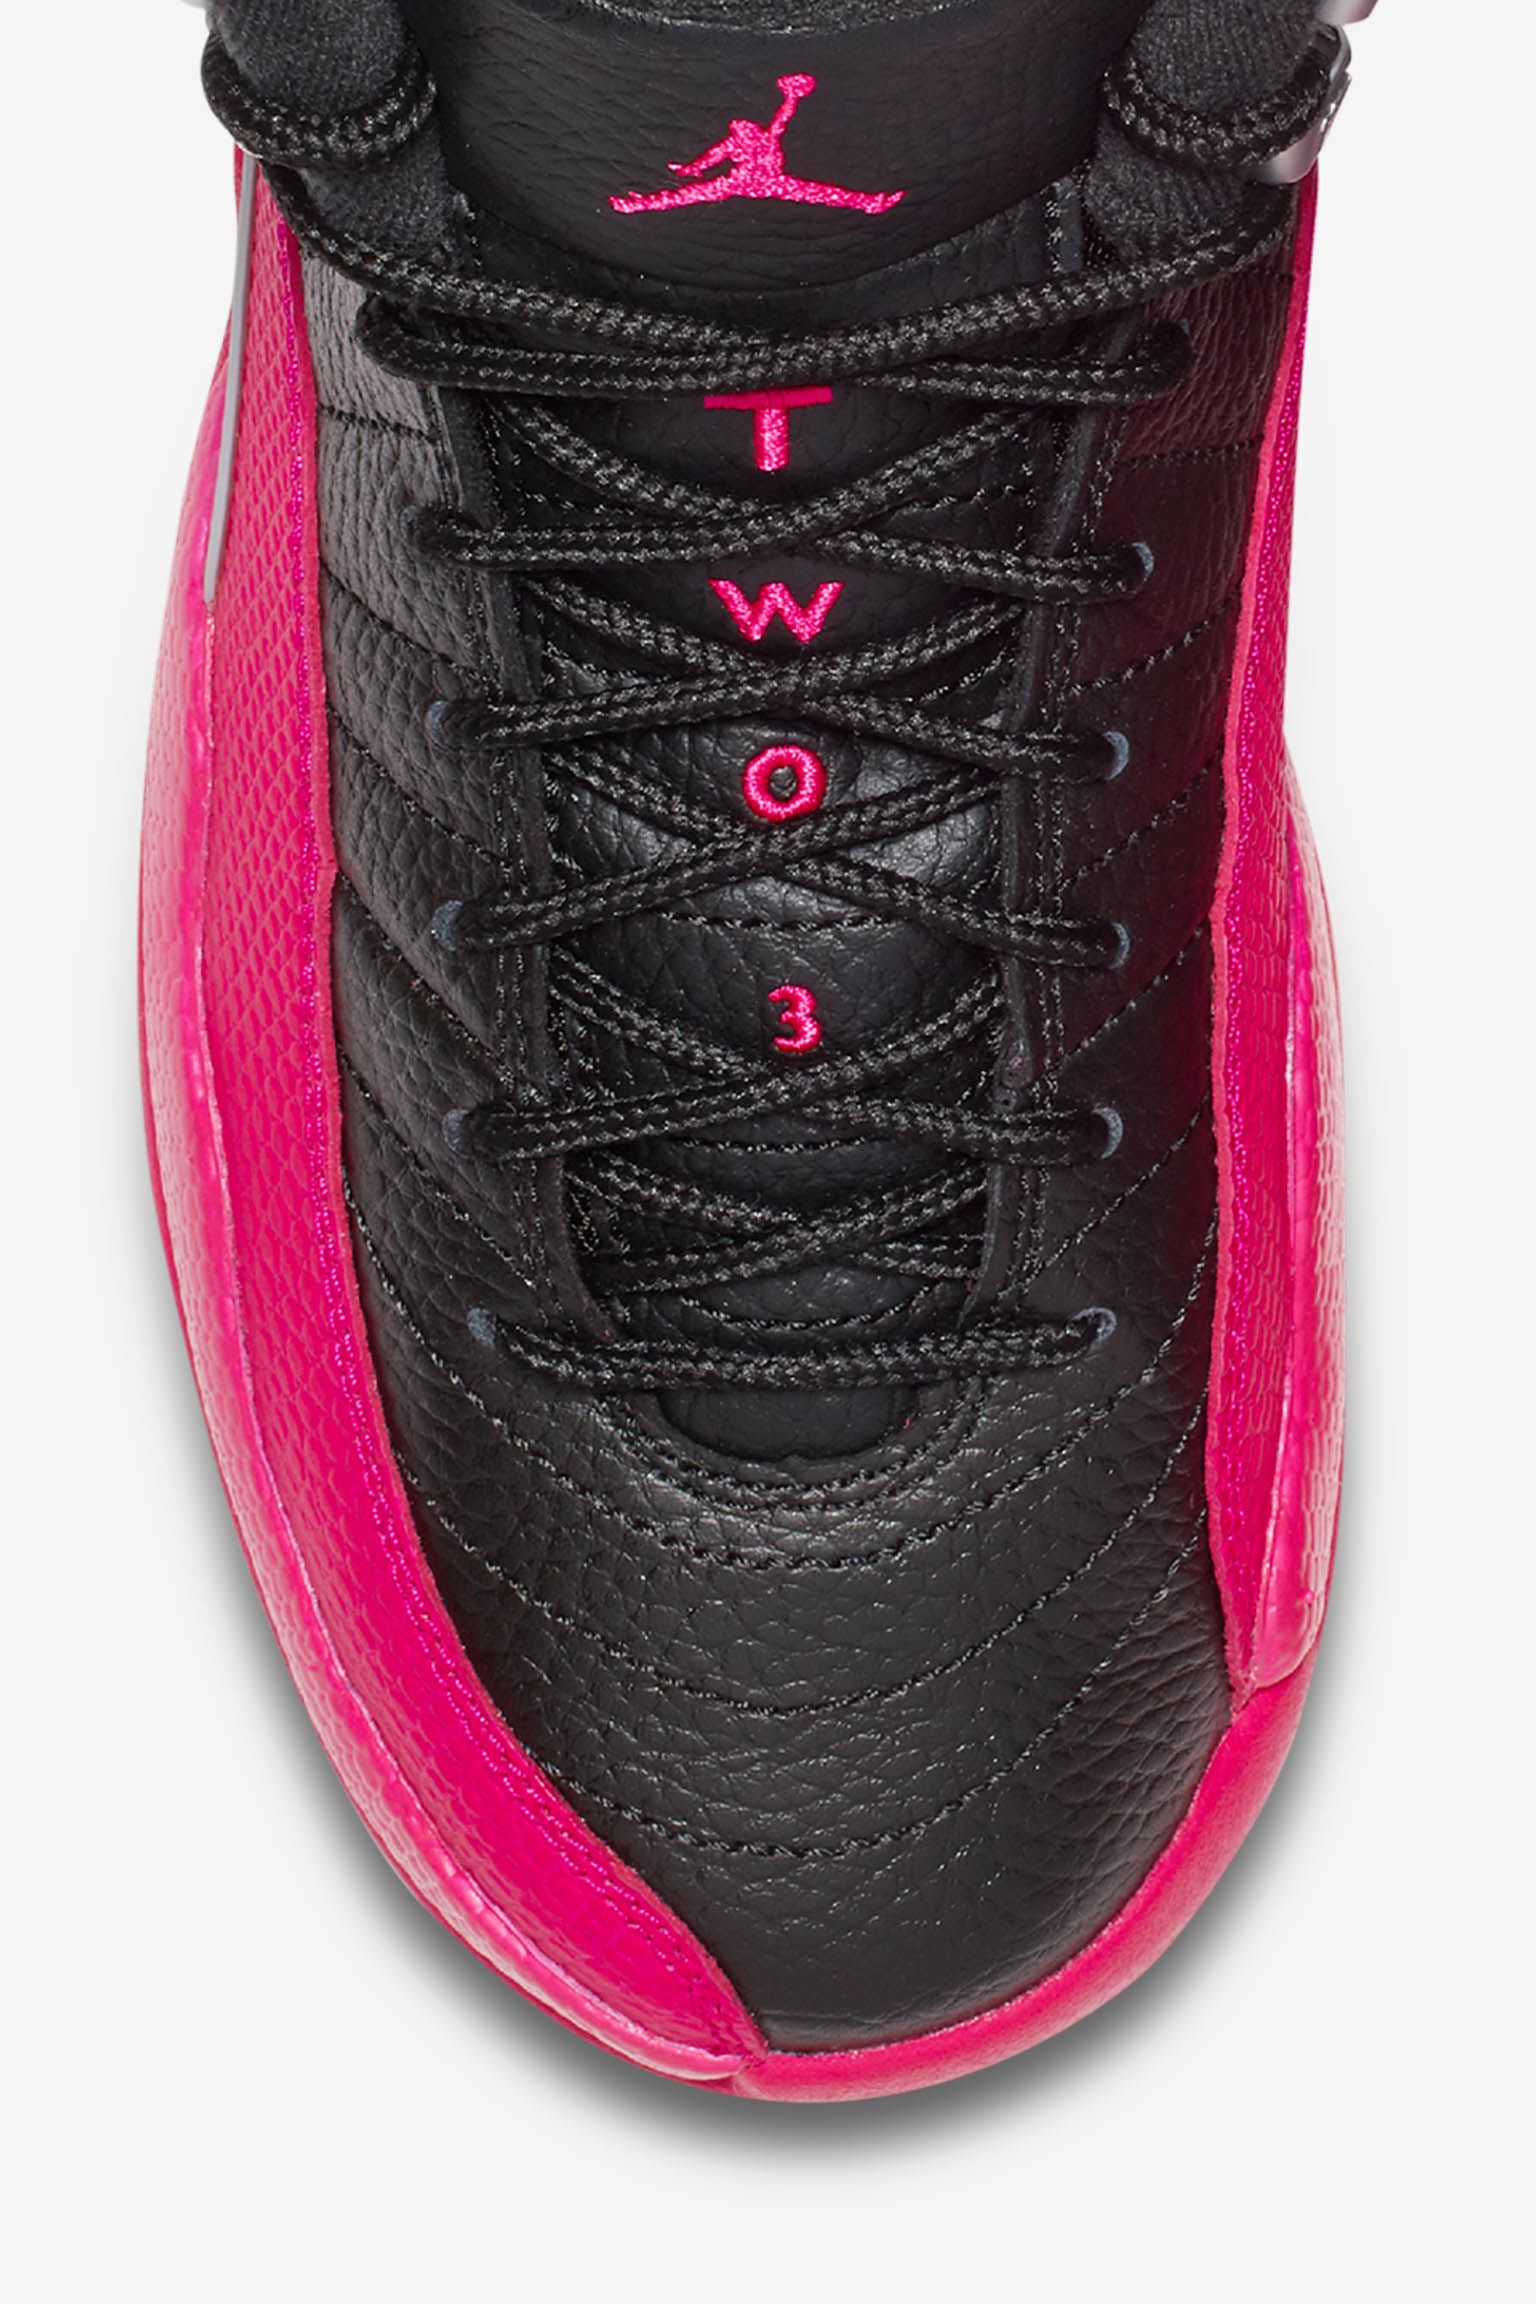 black and hot pink jordan 12s